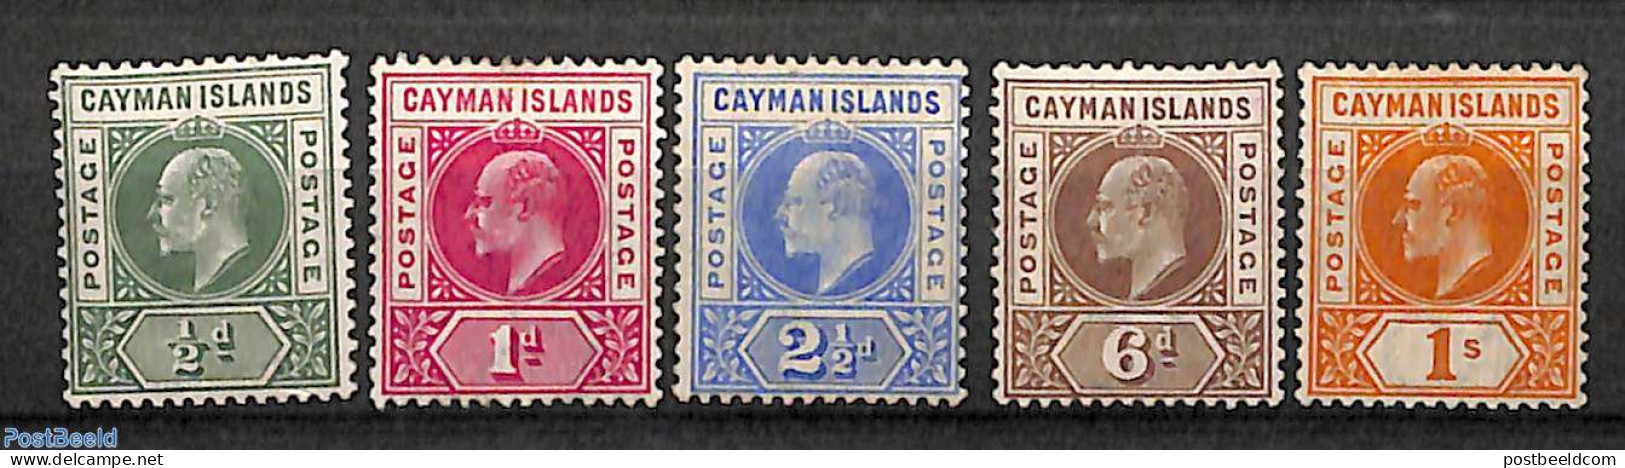 Cayman Islands 1901 Definitives, King Edward VII, WM CA-Crown, 5v, Unused (hinged) - Iles Caïmans